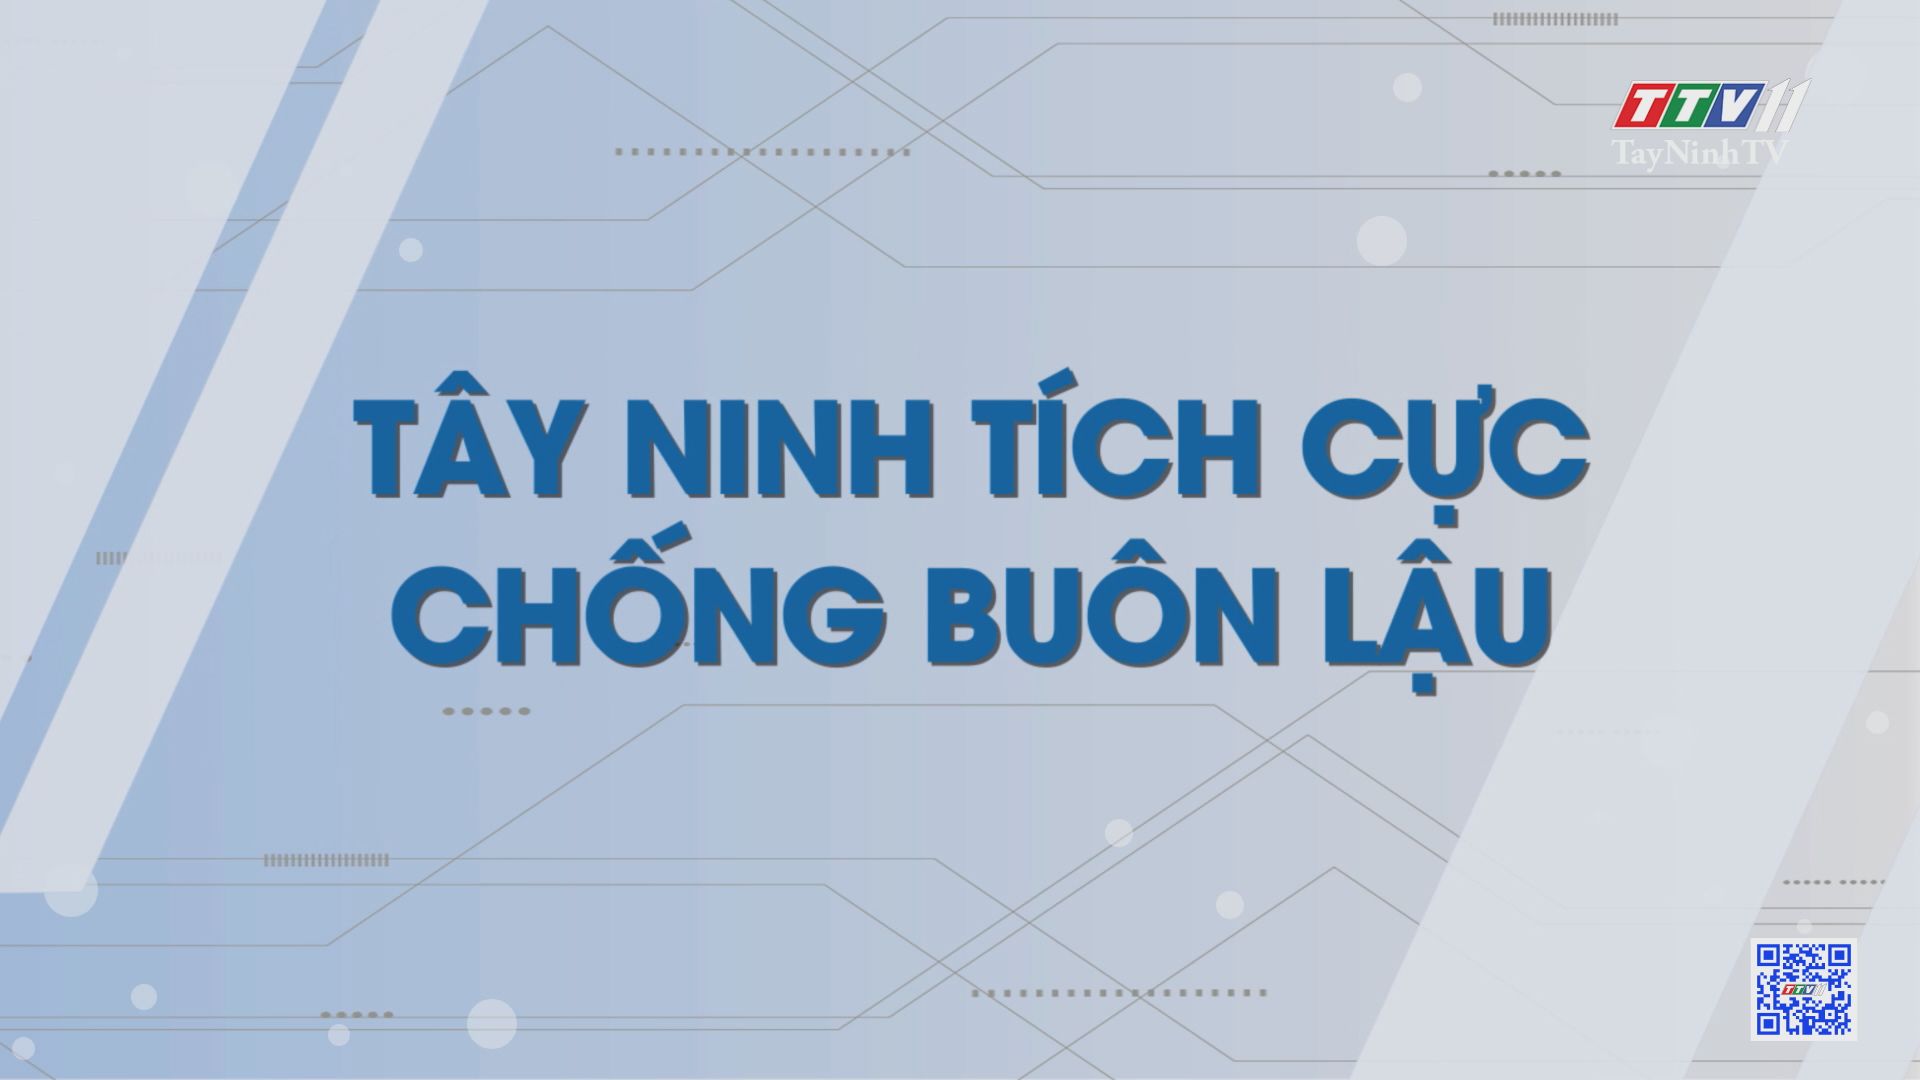 Tây Ninh tích cực chống buôn lậu | Những vấn đề hôm nay | TayNinhTV